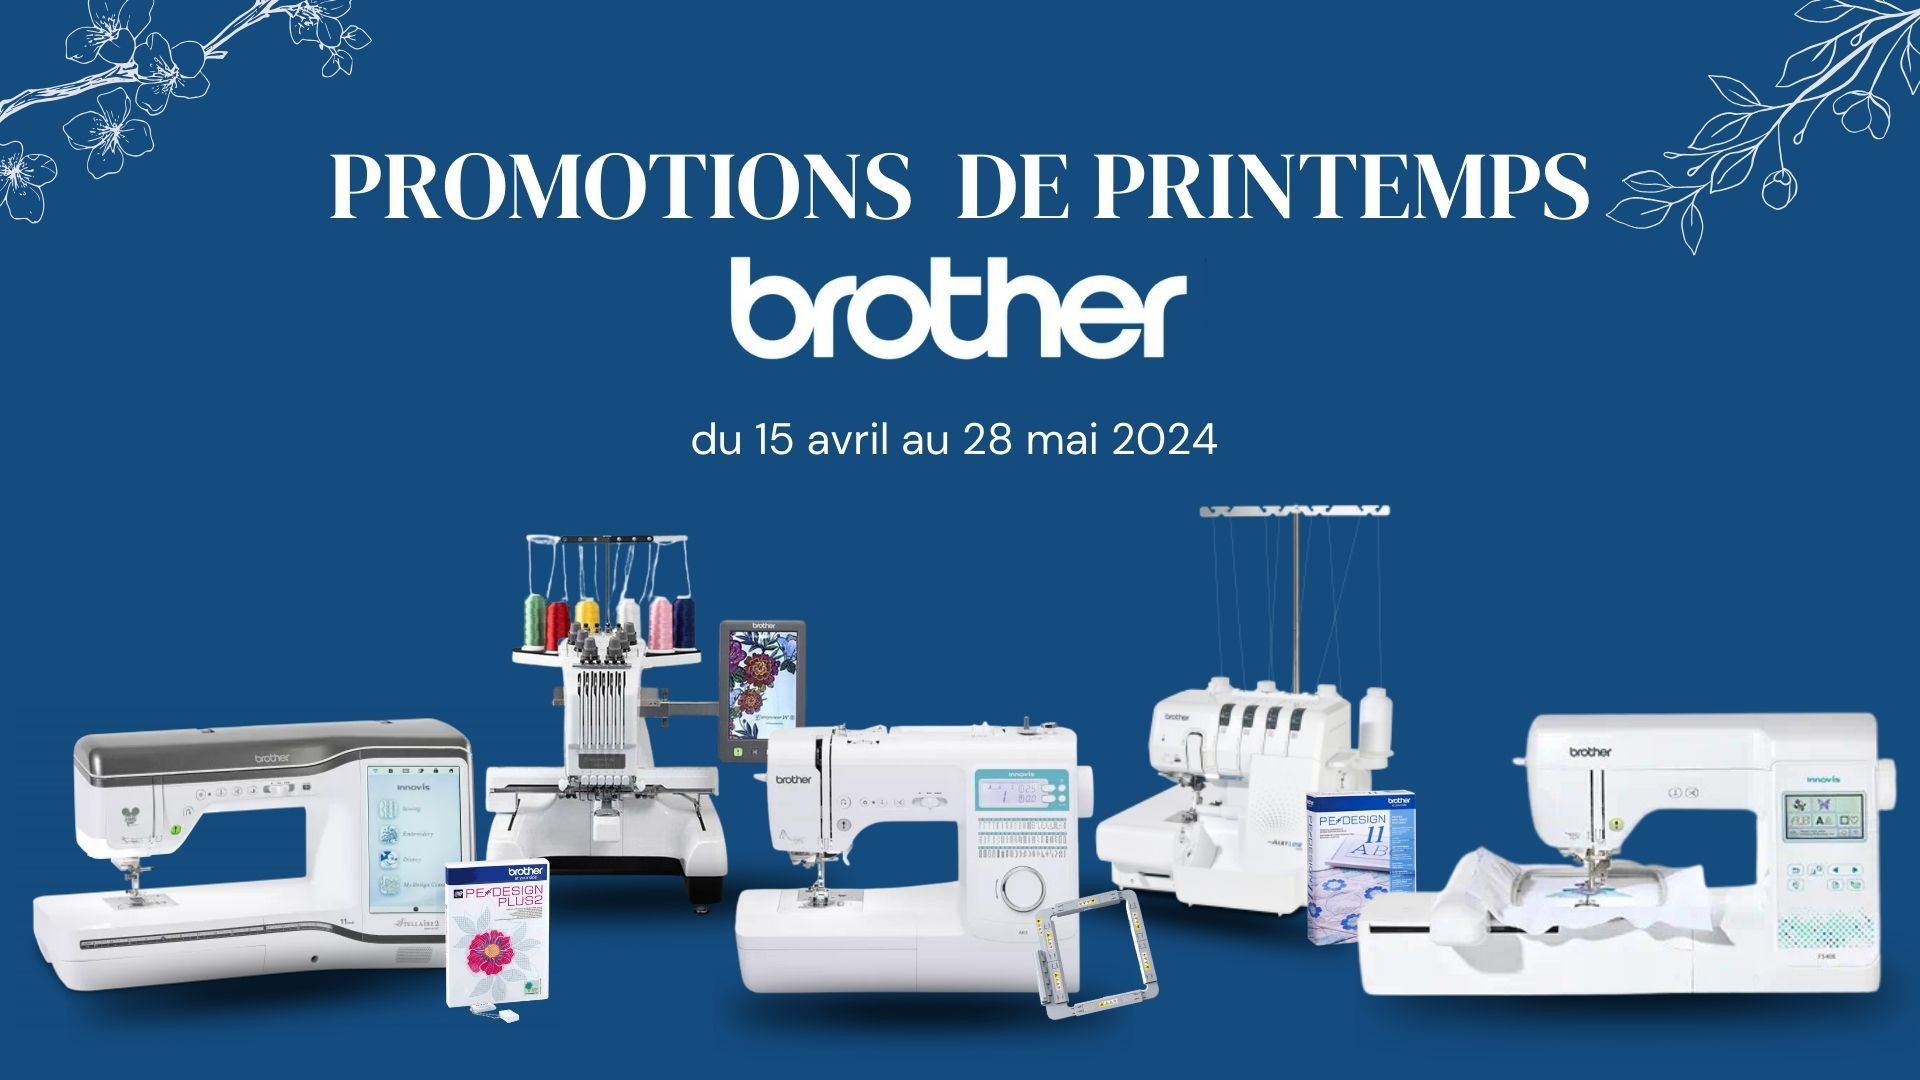 Promotions de printemps Brother valable dès aujourd'hui jusqu'au 28 mai 2024